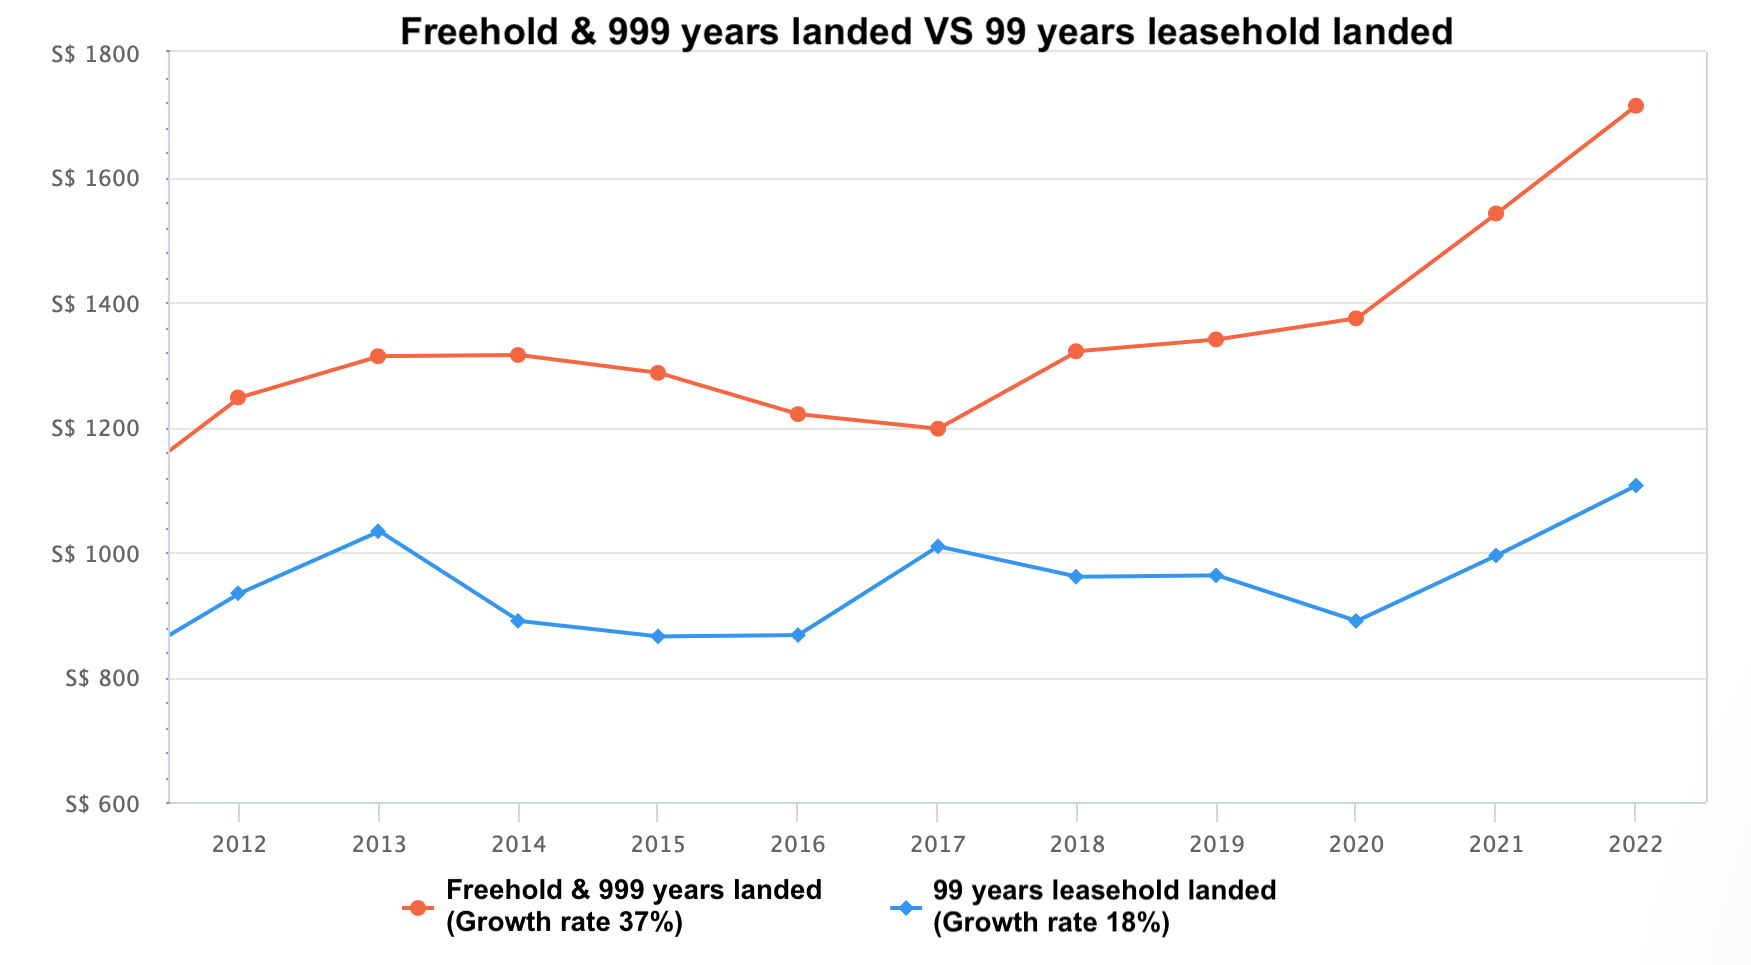 Freehold 999 landed vs 99 landed